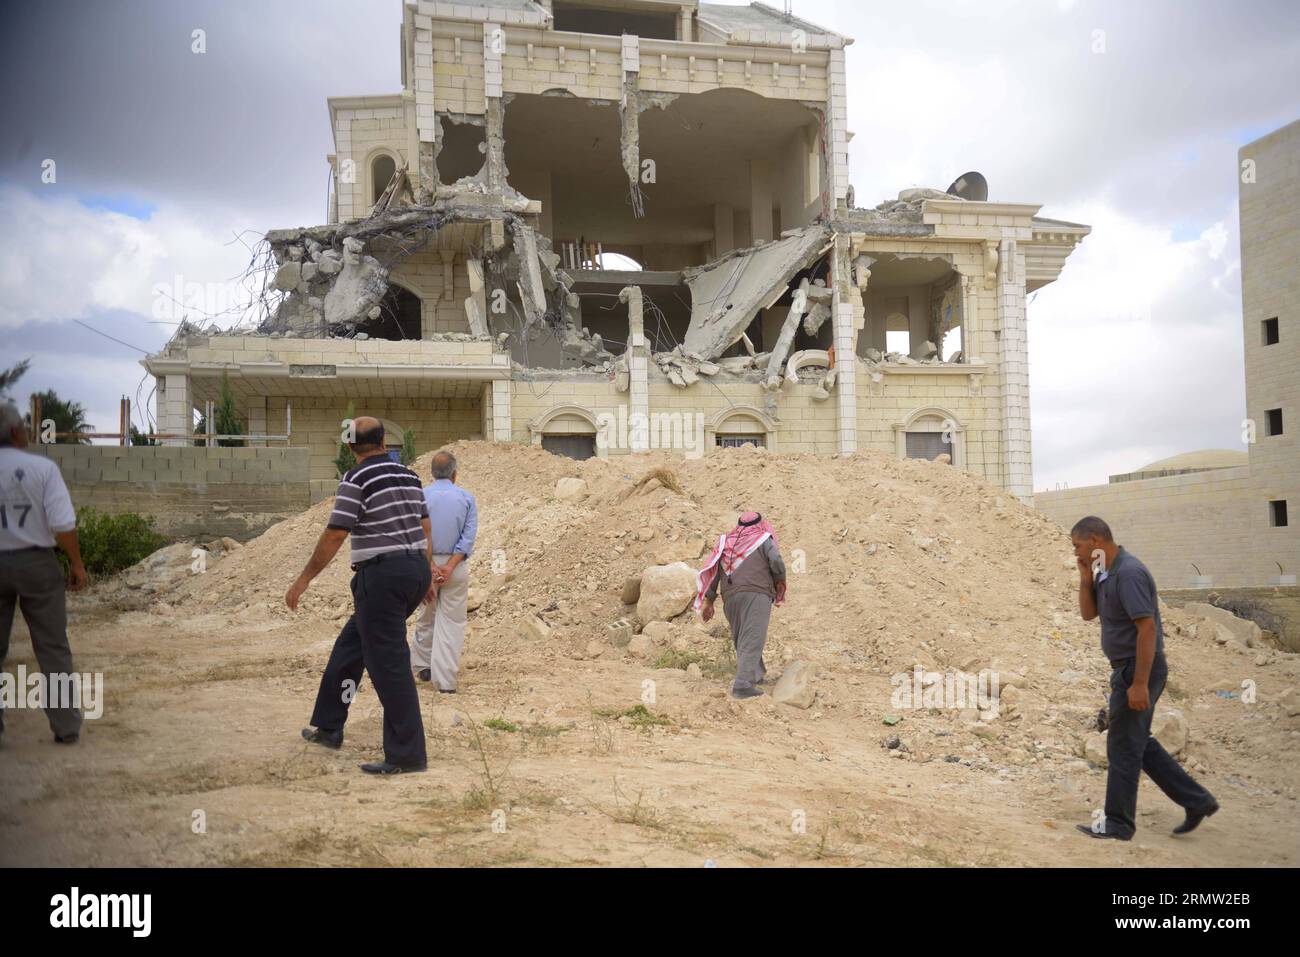 (140929) -- BETHLÉEM, 29 septembre 2014 -- des Palestiniens inspectent les décombres d'une maison après qu'elle ait été partiellement démolie par des bulldozers israéliens dans la ville d'Abu dis près de la ville de Bethléem en Cisjordanie le 29 septembre 2014.) MIDEAST-BETHLEHEM-MILITARY EmadxDrimly PUBLICATIONxNOTxINxCHN Bethlehem sept 29 2014 PALESTINIENS inspectent les DÉCOMBRES d'une maison qui a été partiellement démolie par des bulldozers israéliens dans la ville d'Abu DIS près de la CISJORDANIE ville de Bethléem LE 29 2014 septembre Mideast Bethlehem MILITARY PUBLICATIONxNOTxINxCHN Banque D'Images